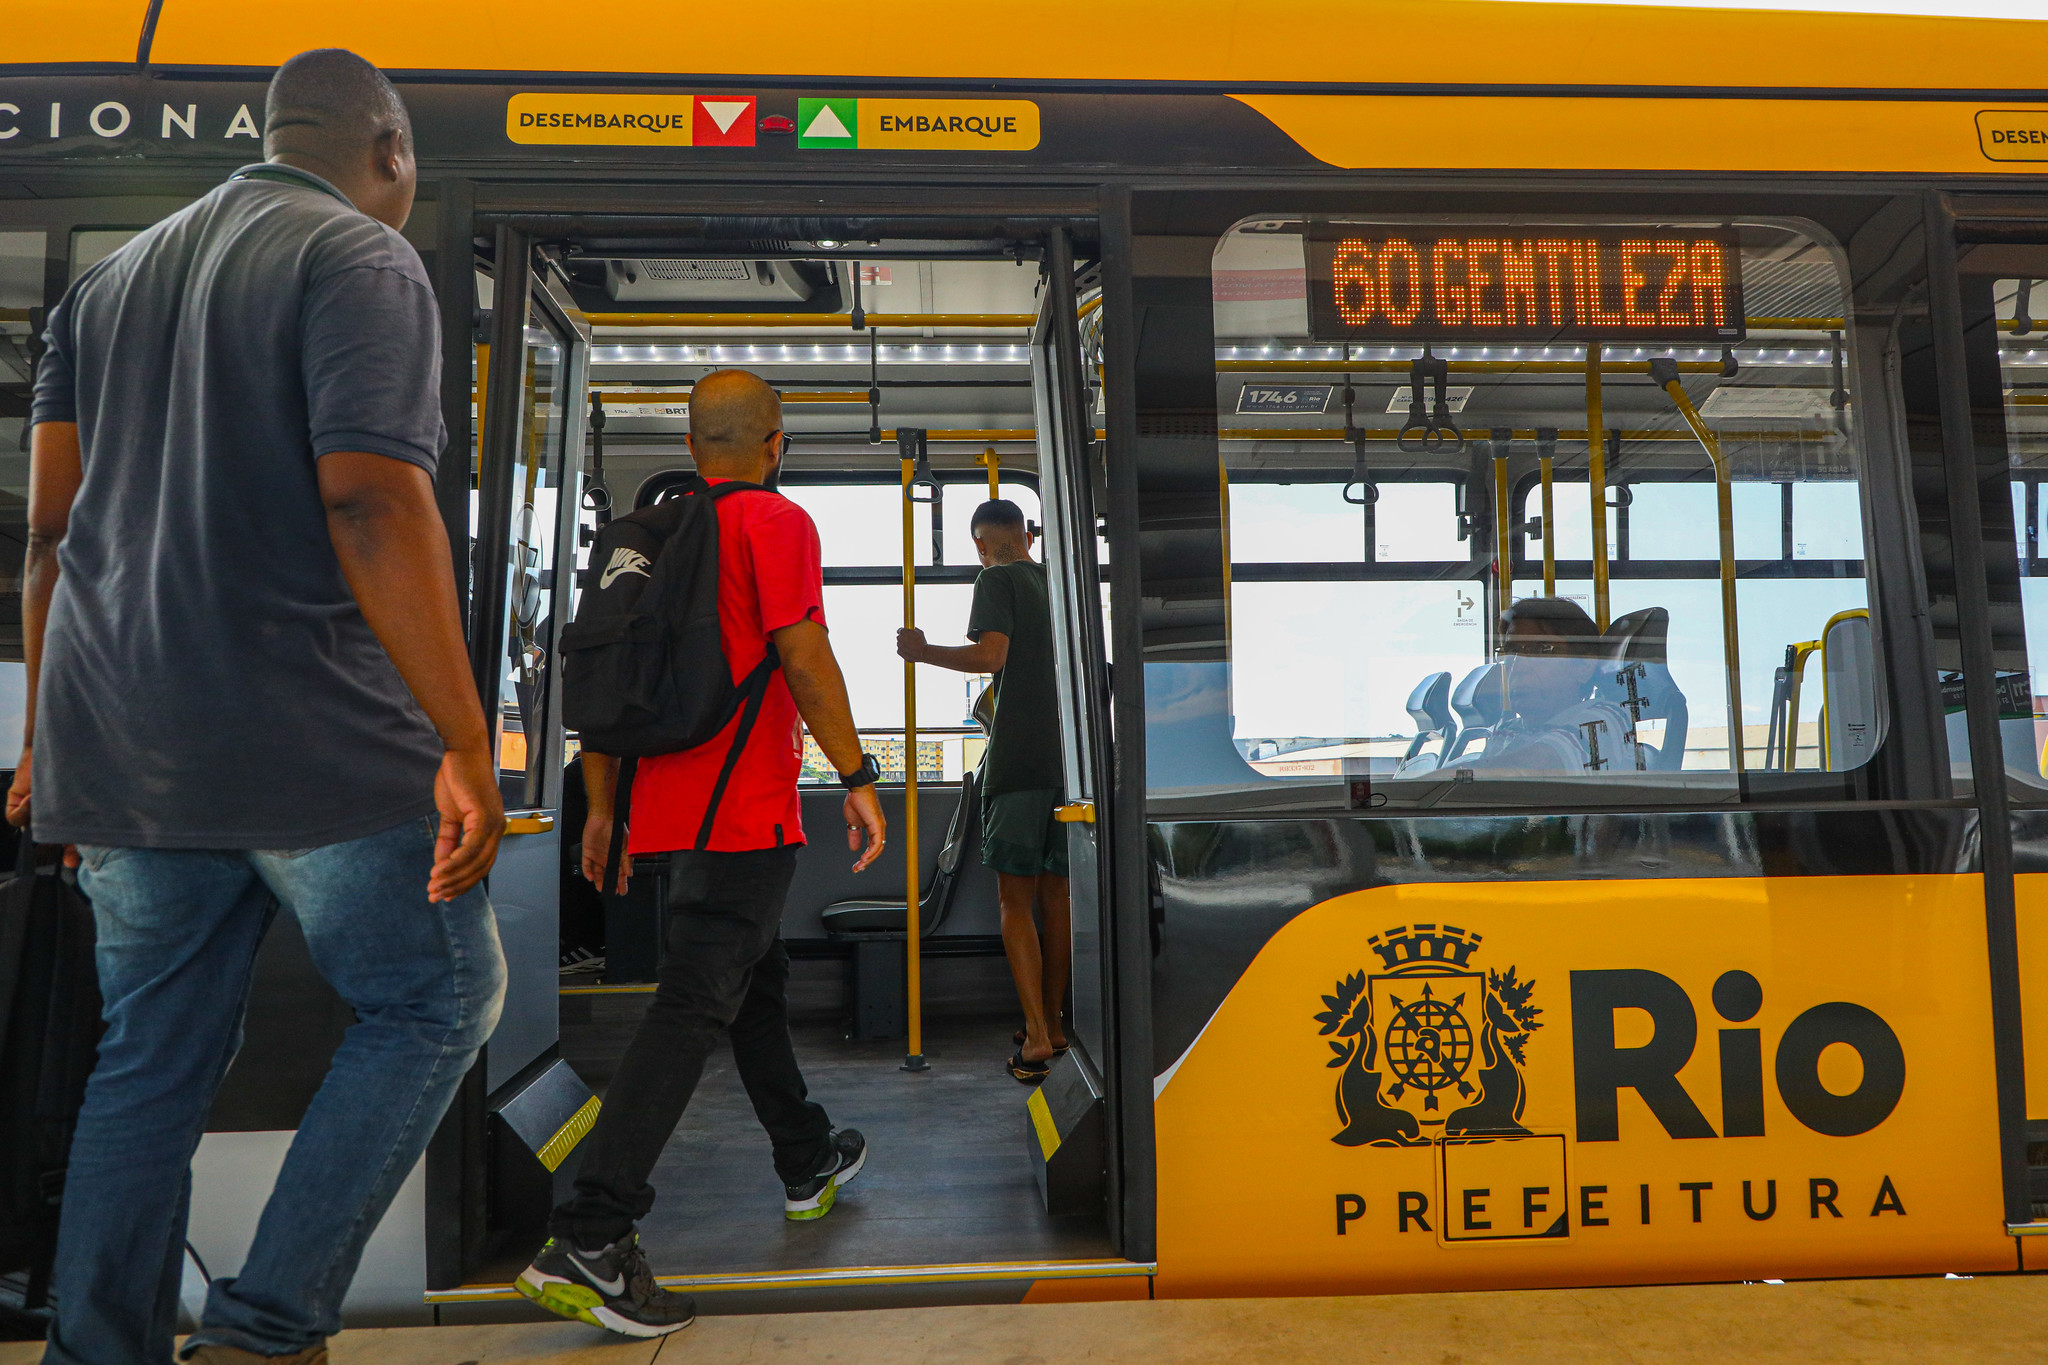 BRT Seguro completa três anos com cerca de 3.400 prisões realizadas por crimes diversos